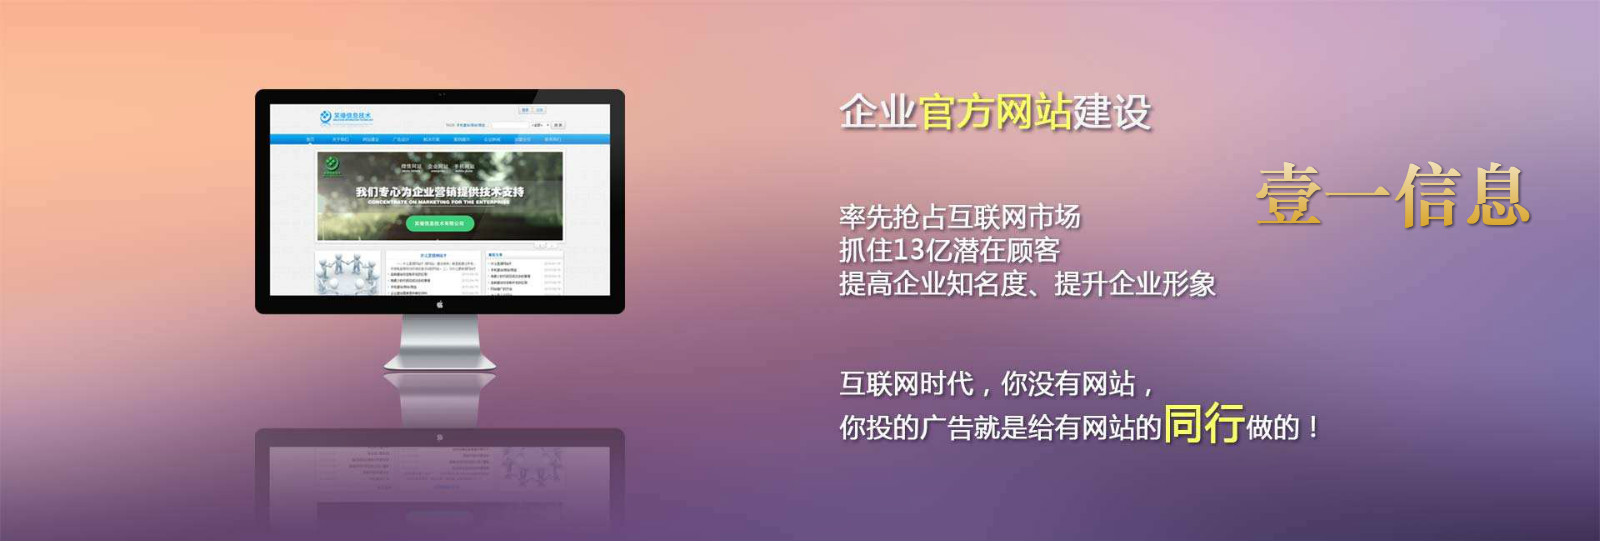 杭州网站建设公司_杭州BG电子信息技术有限公司